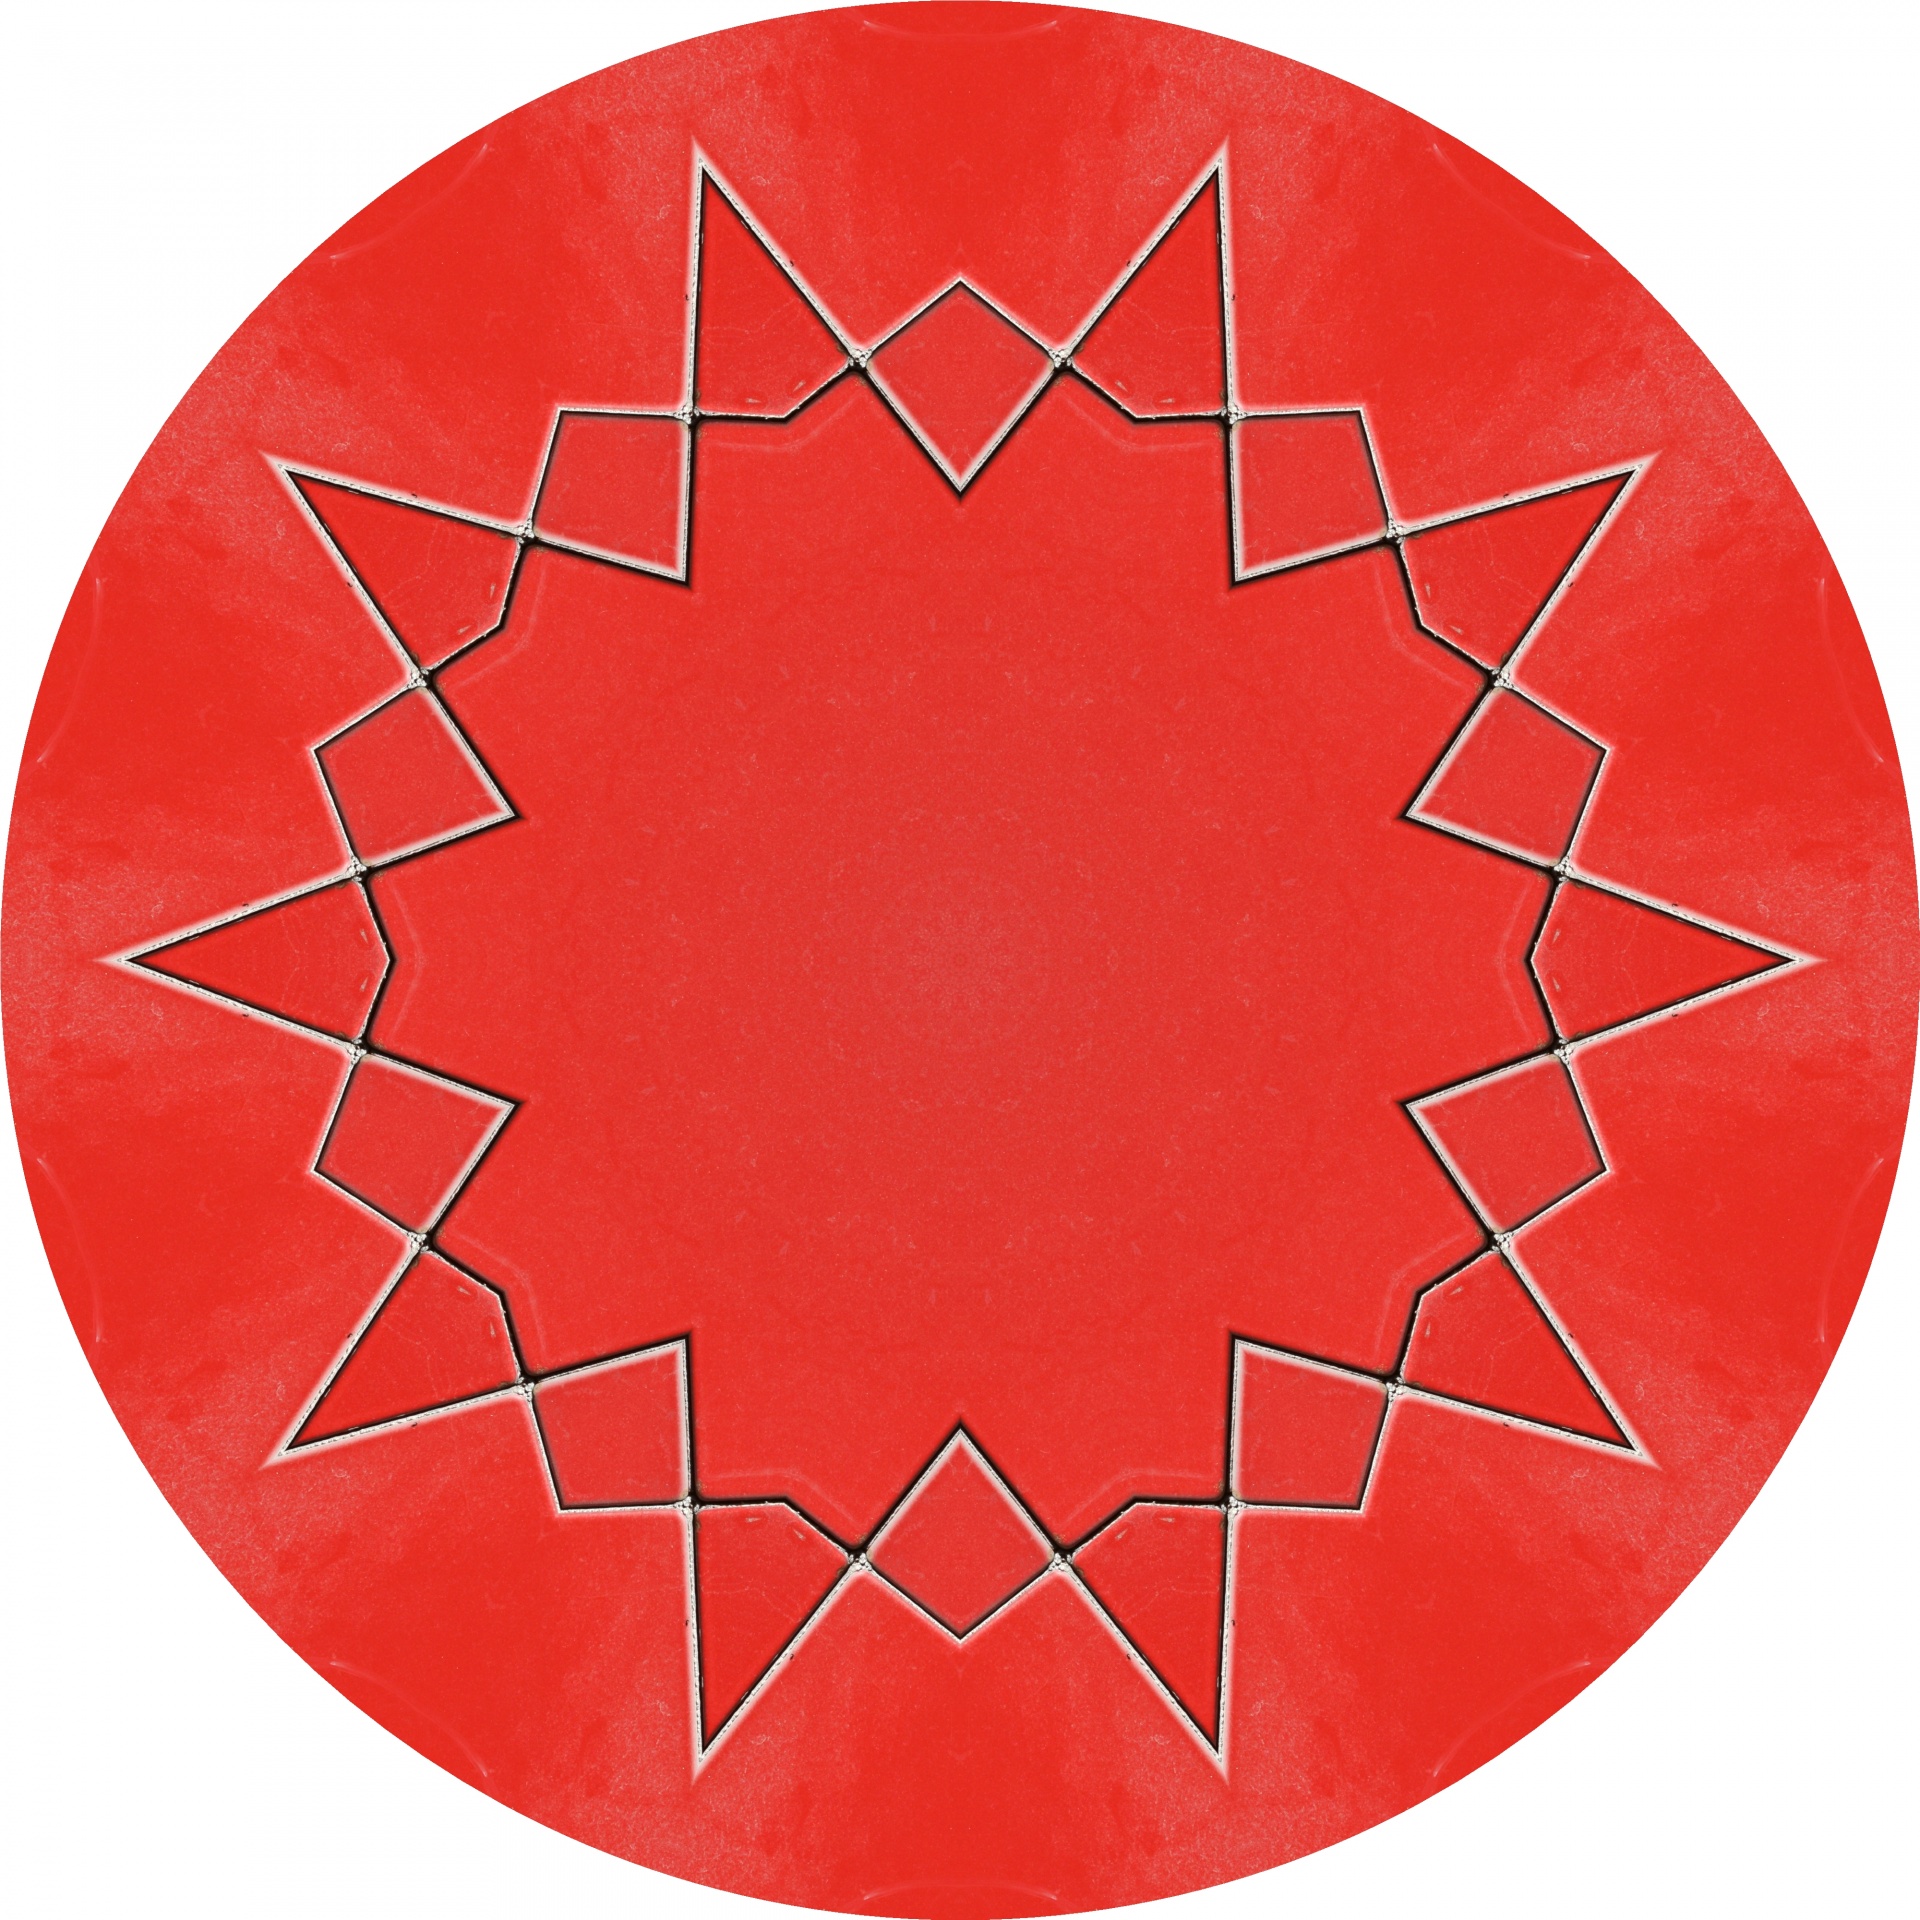 kaleidoscope red circle free photo